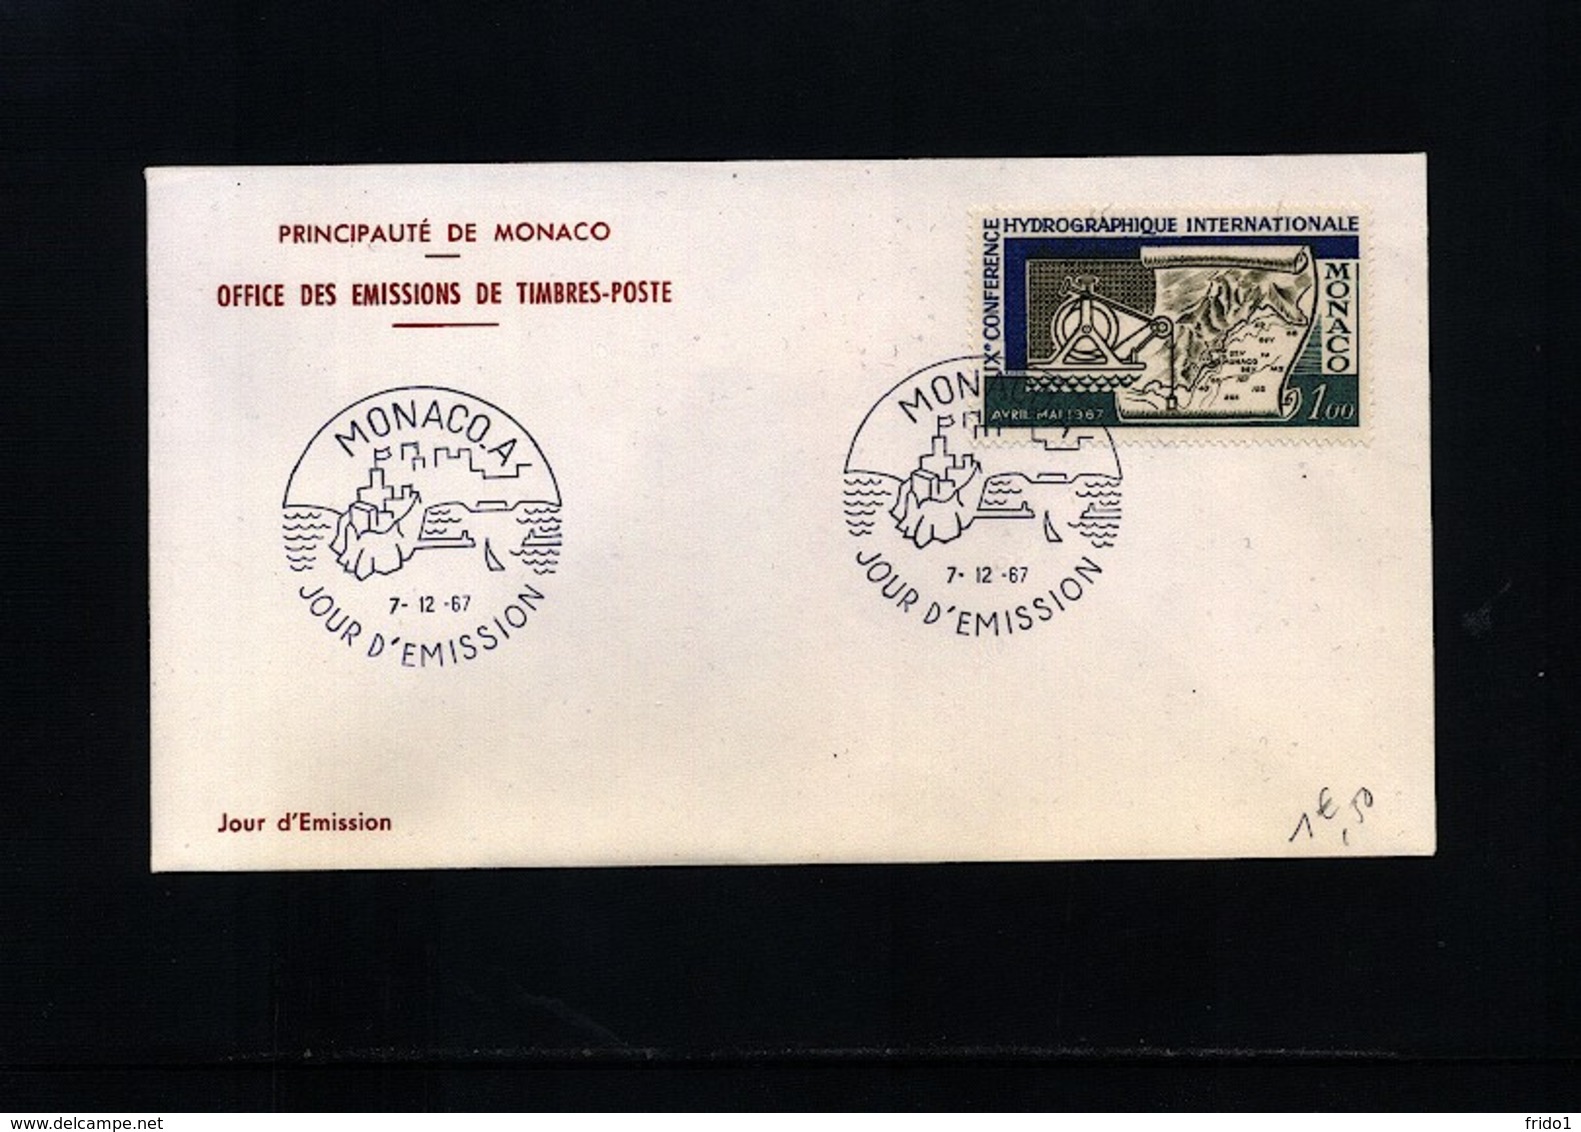 Monaco 1967 Michel 873 FDC - 1967 – Montreal (Canada)